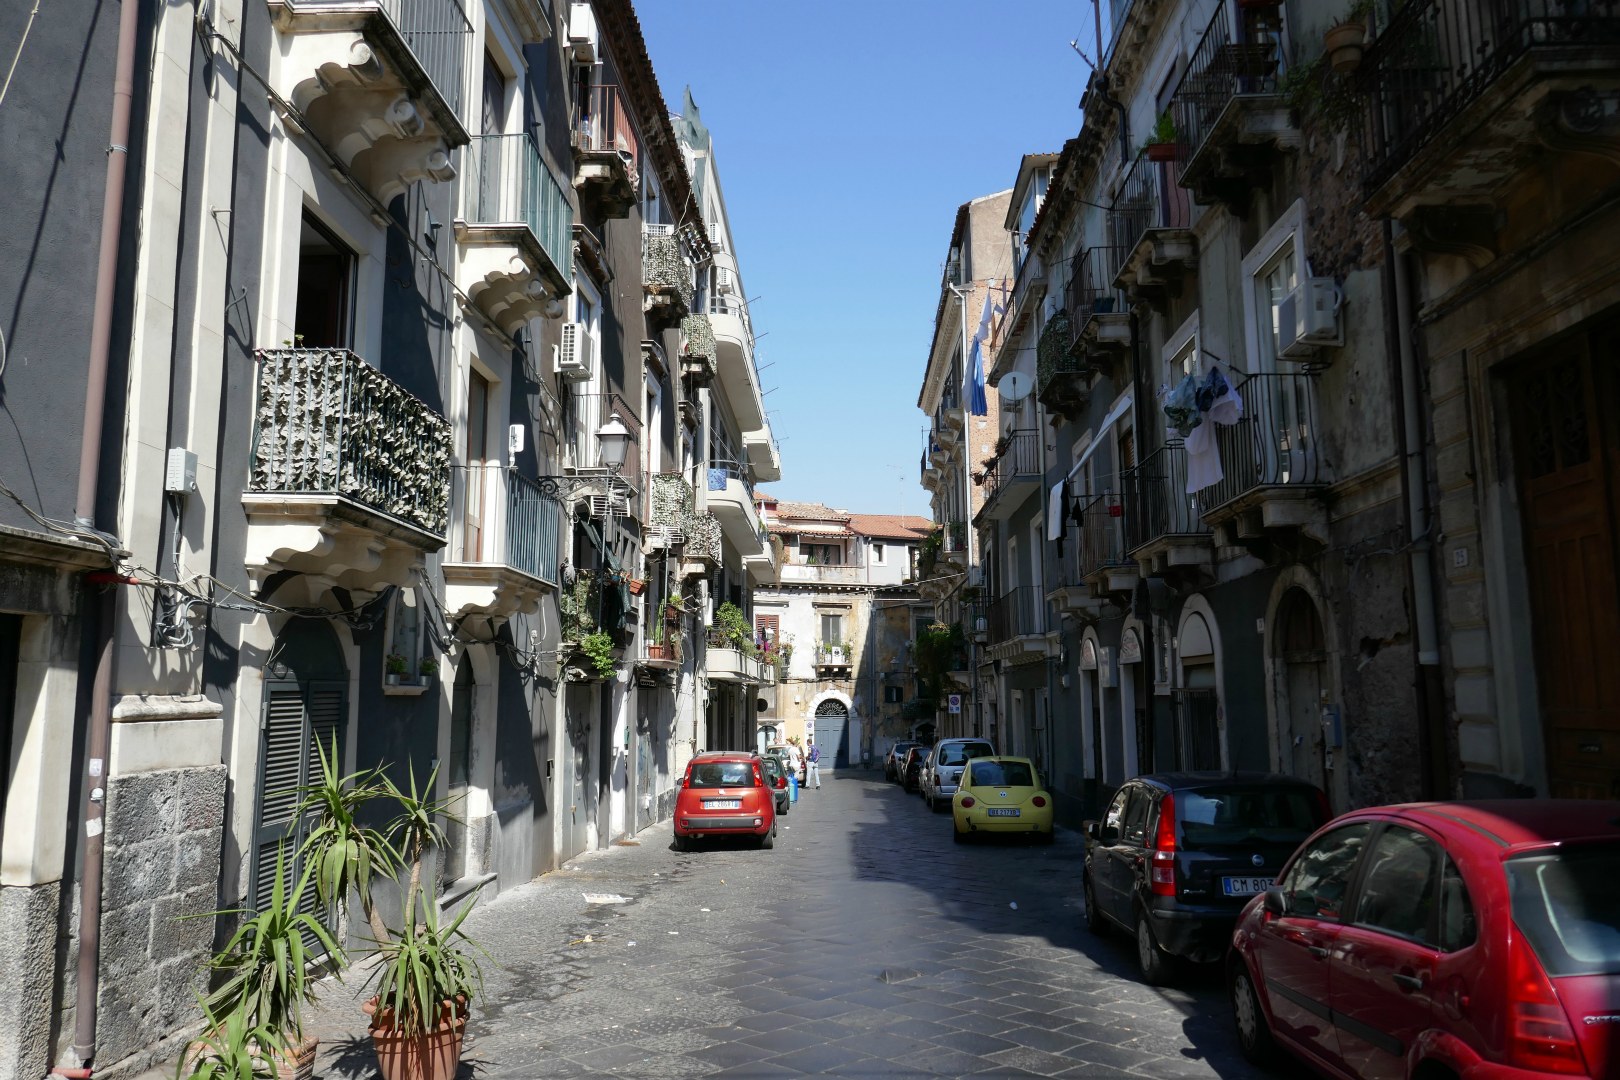 Back street, Catania, Sicily